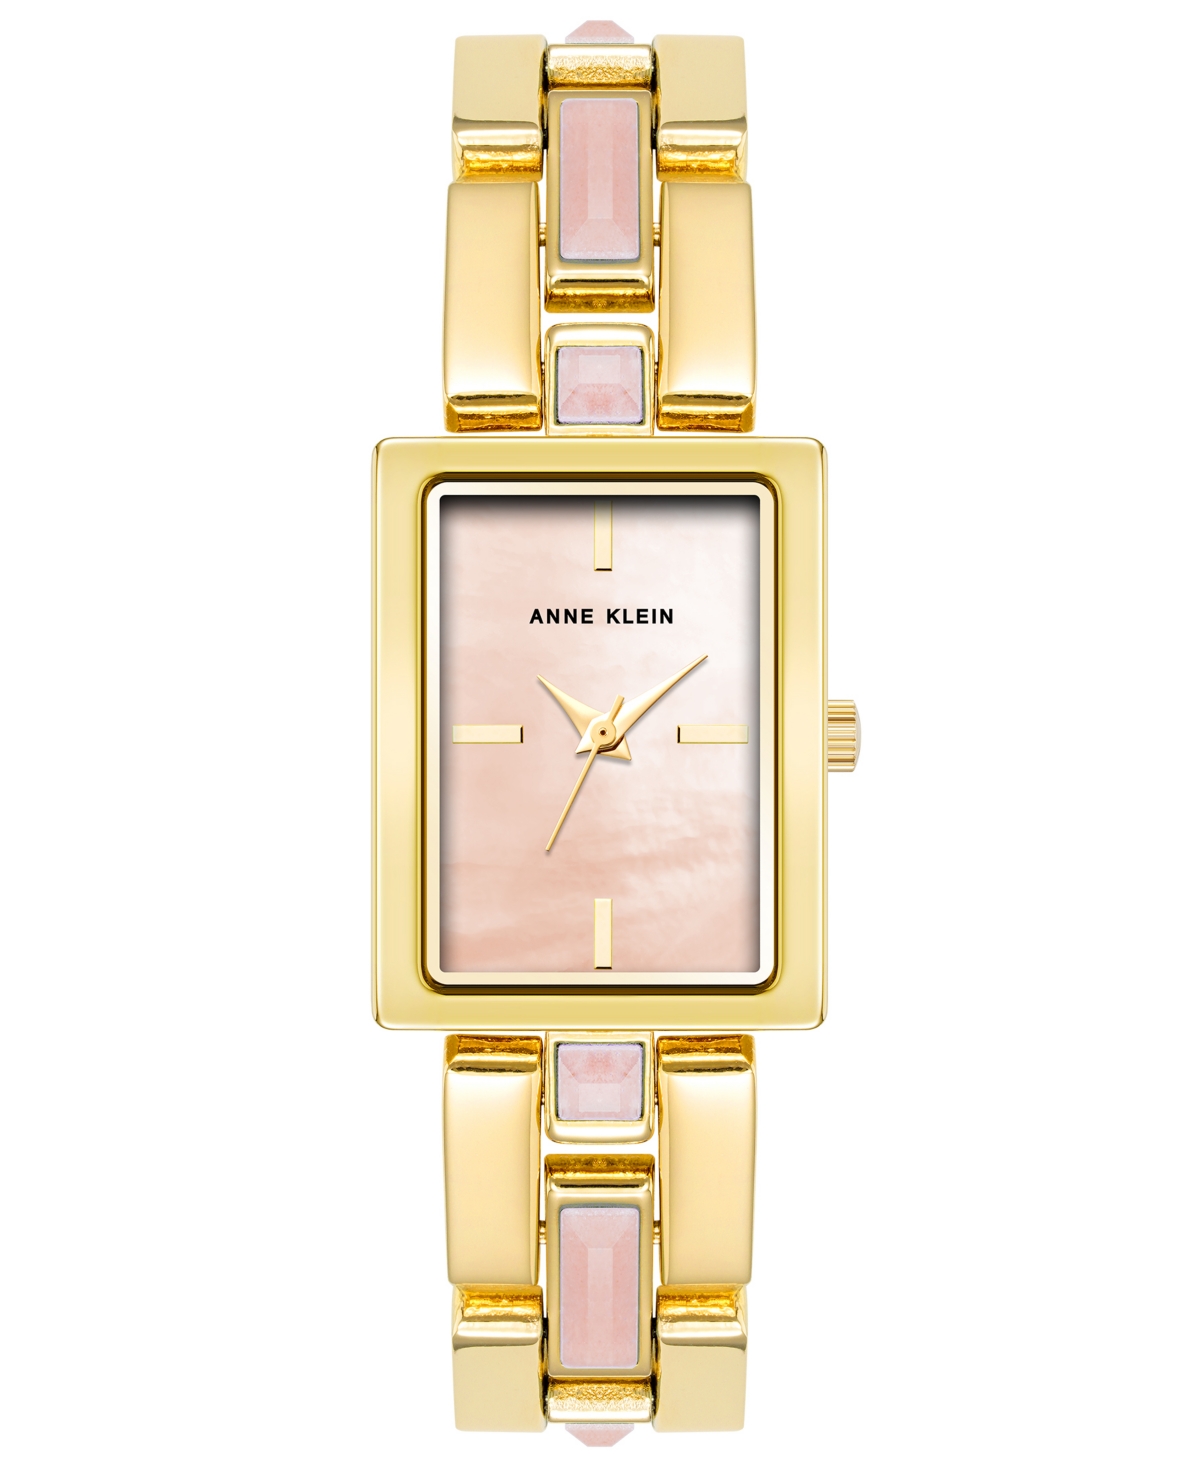 Anne Klein Women's Quartz Gold-tone Alloy Watch, 28mm X 21mm In Pink,gold-tone